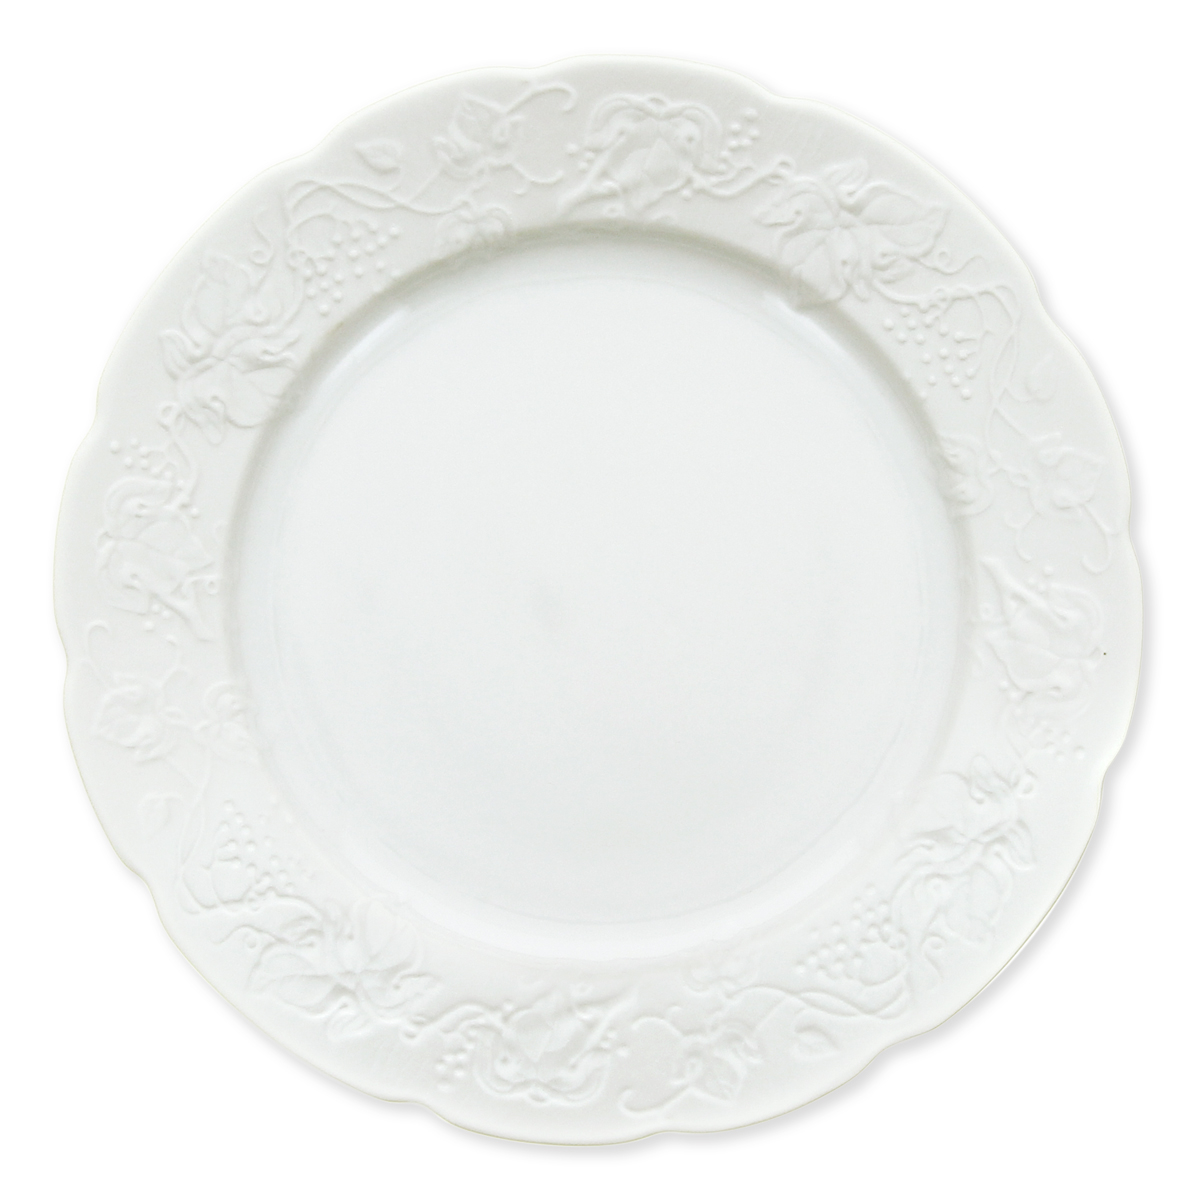 Visuel deCOLLECTION MARITZA - COLLECTION MARITZA Service de table en porcelaine blanche 26cm